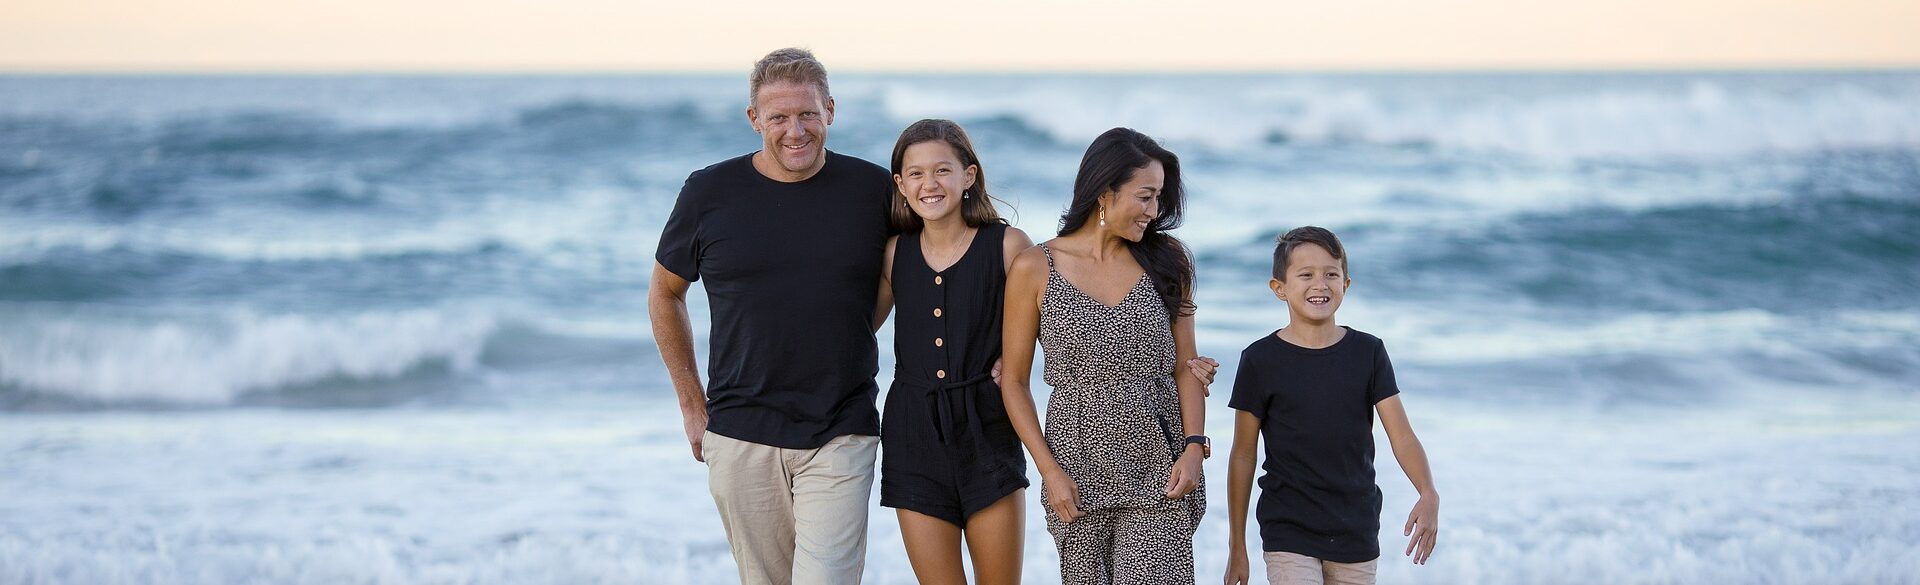 Familie (Vater, Mutter, Tochter und Sohn) im Sommer am Strand vor einem Ozean.